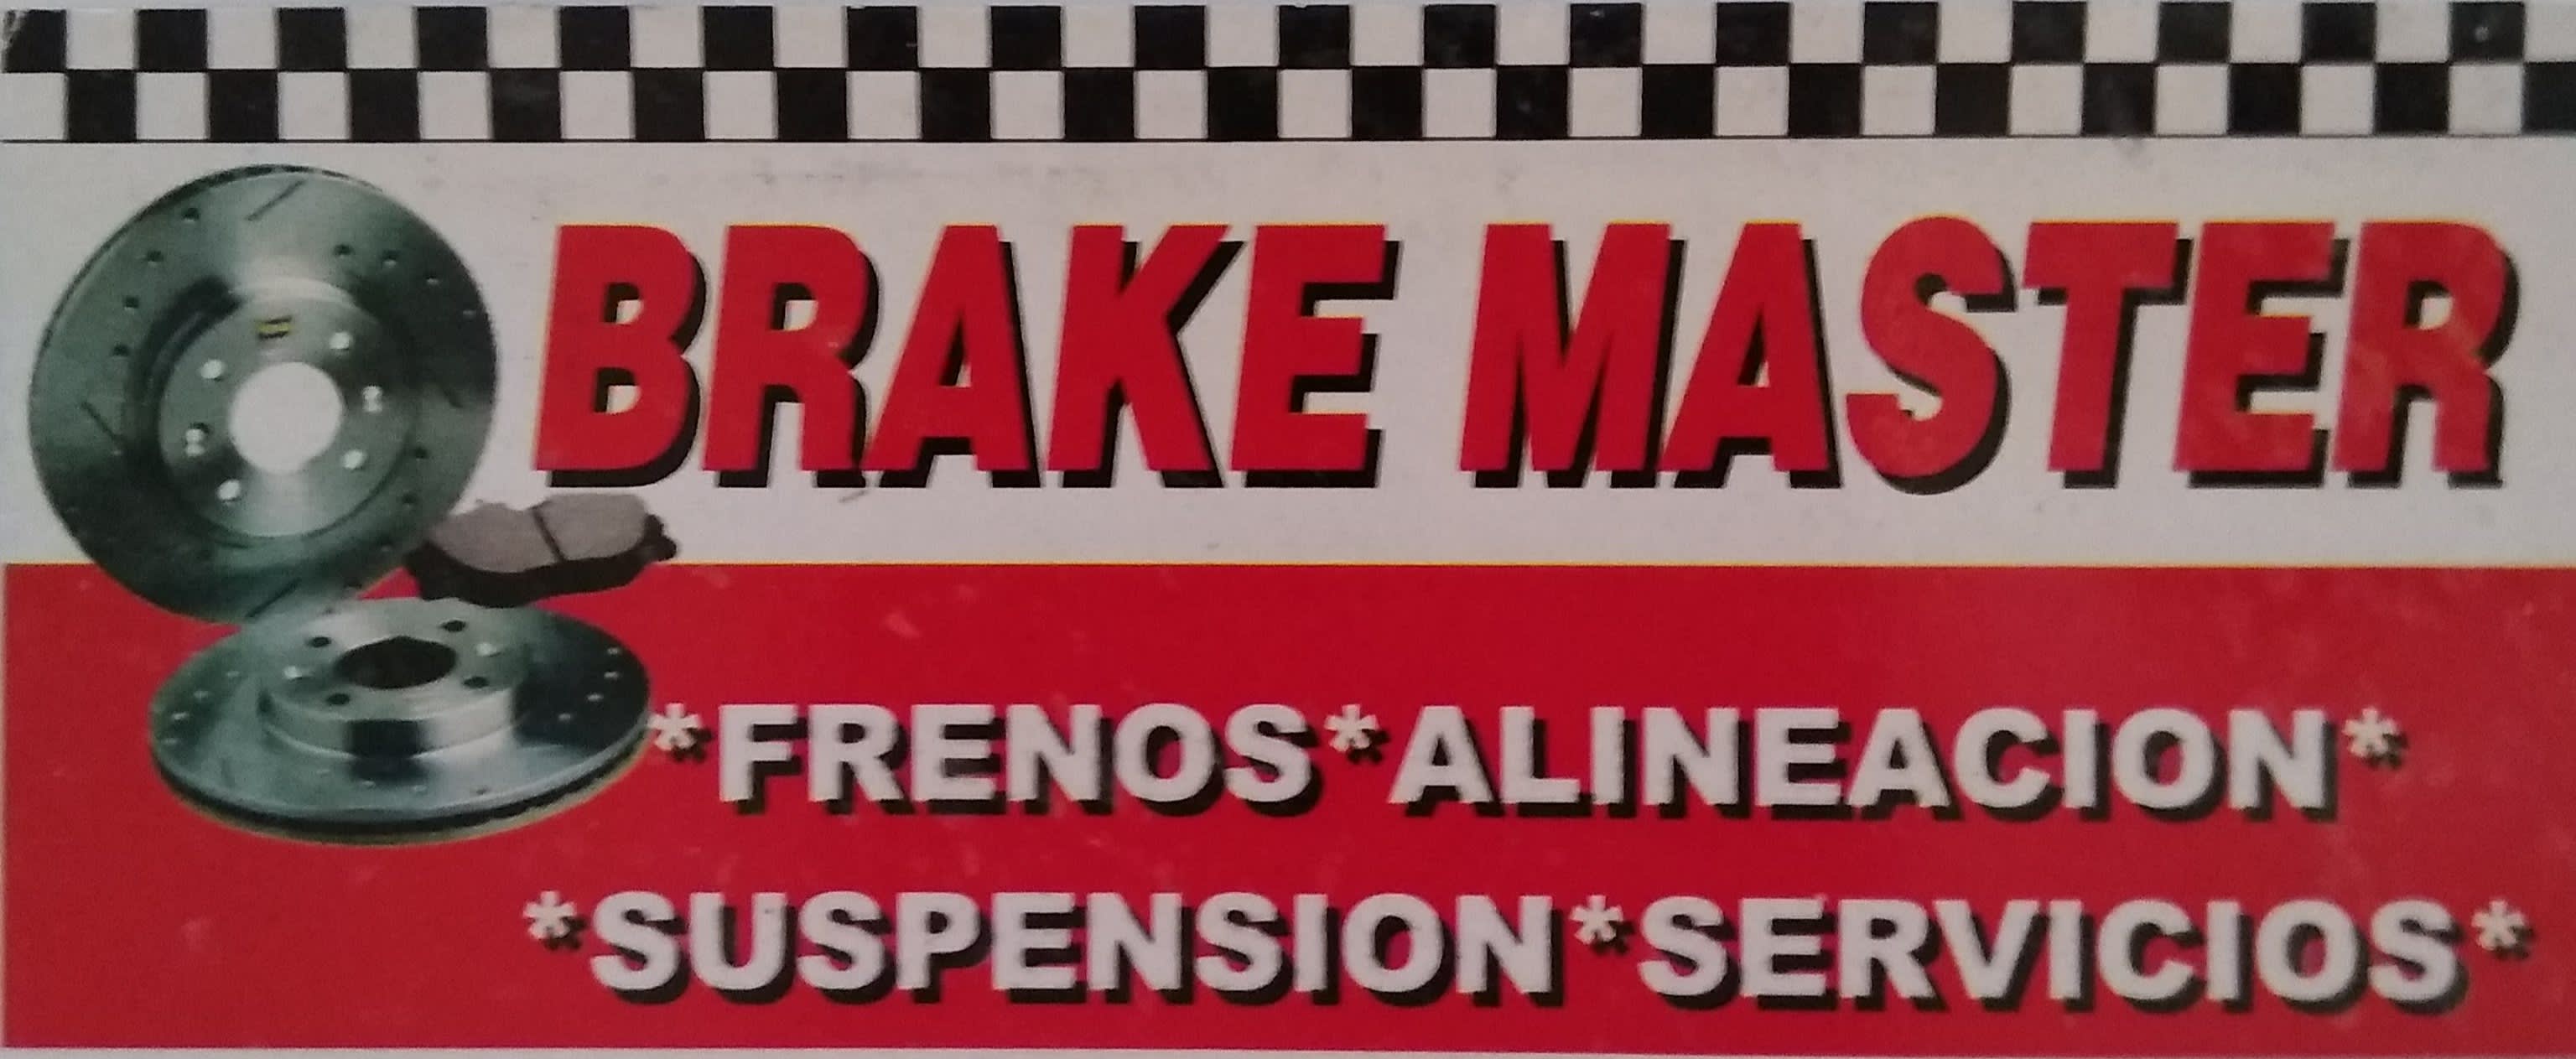 Brake Master